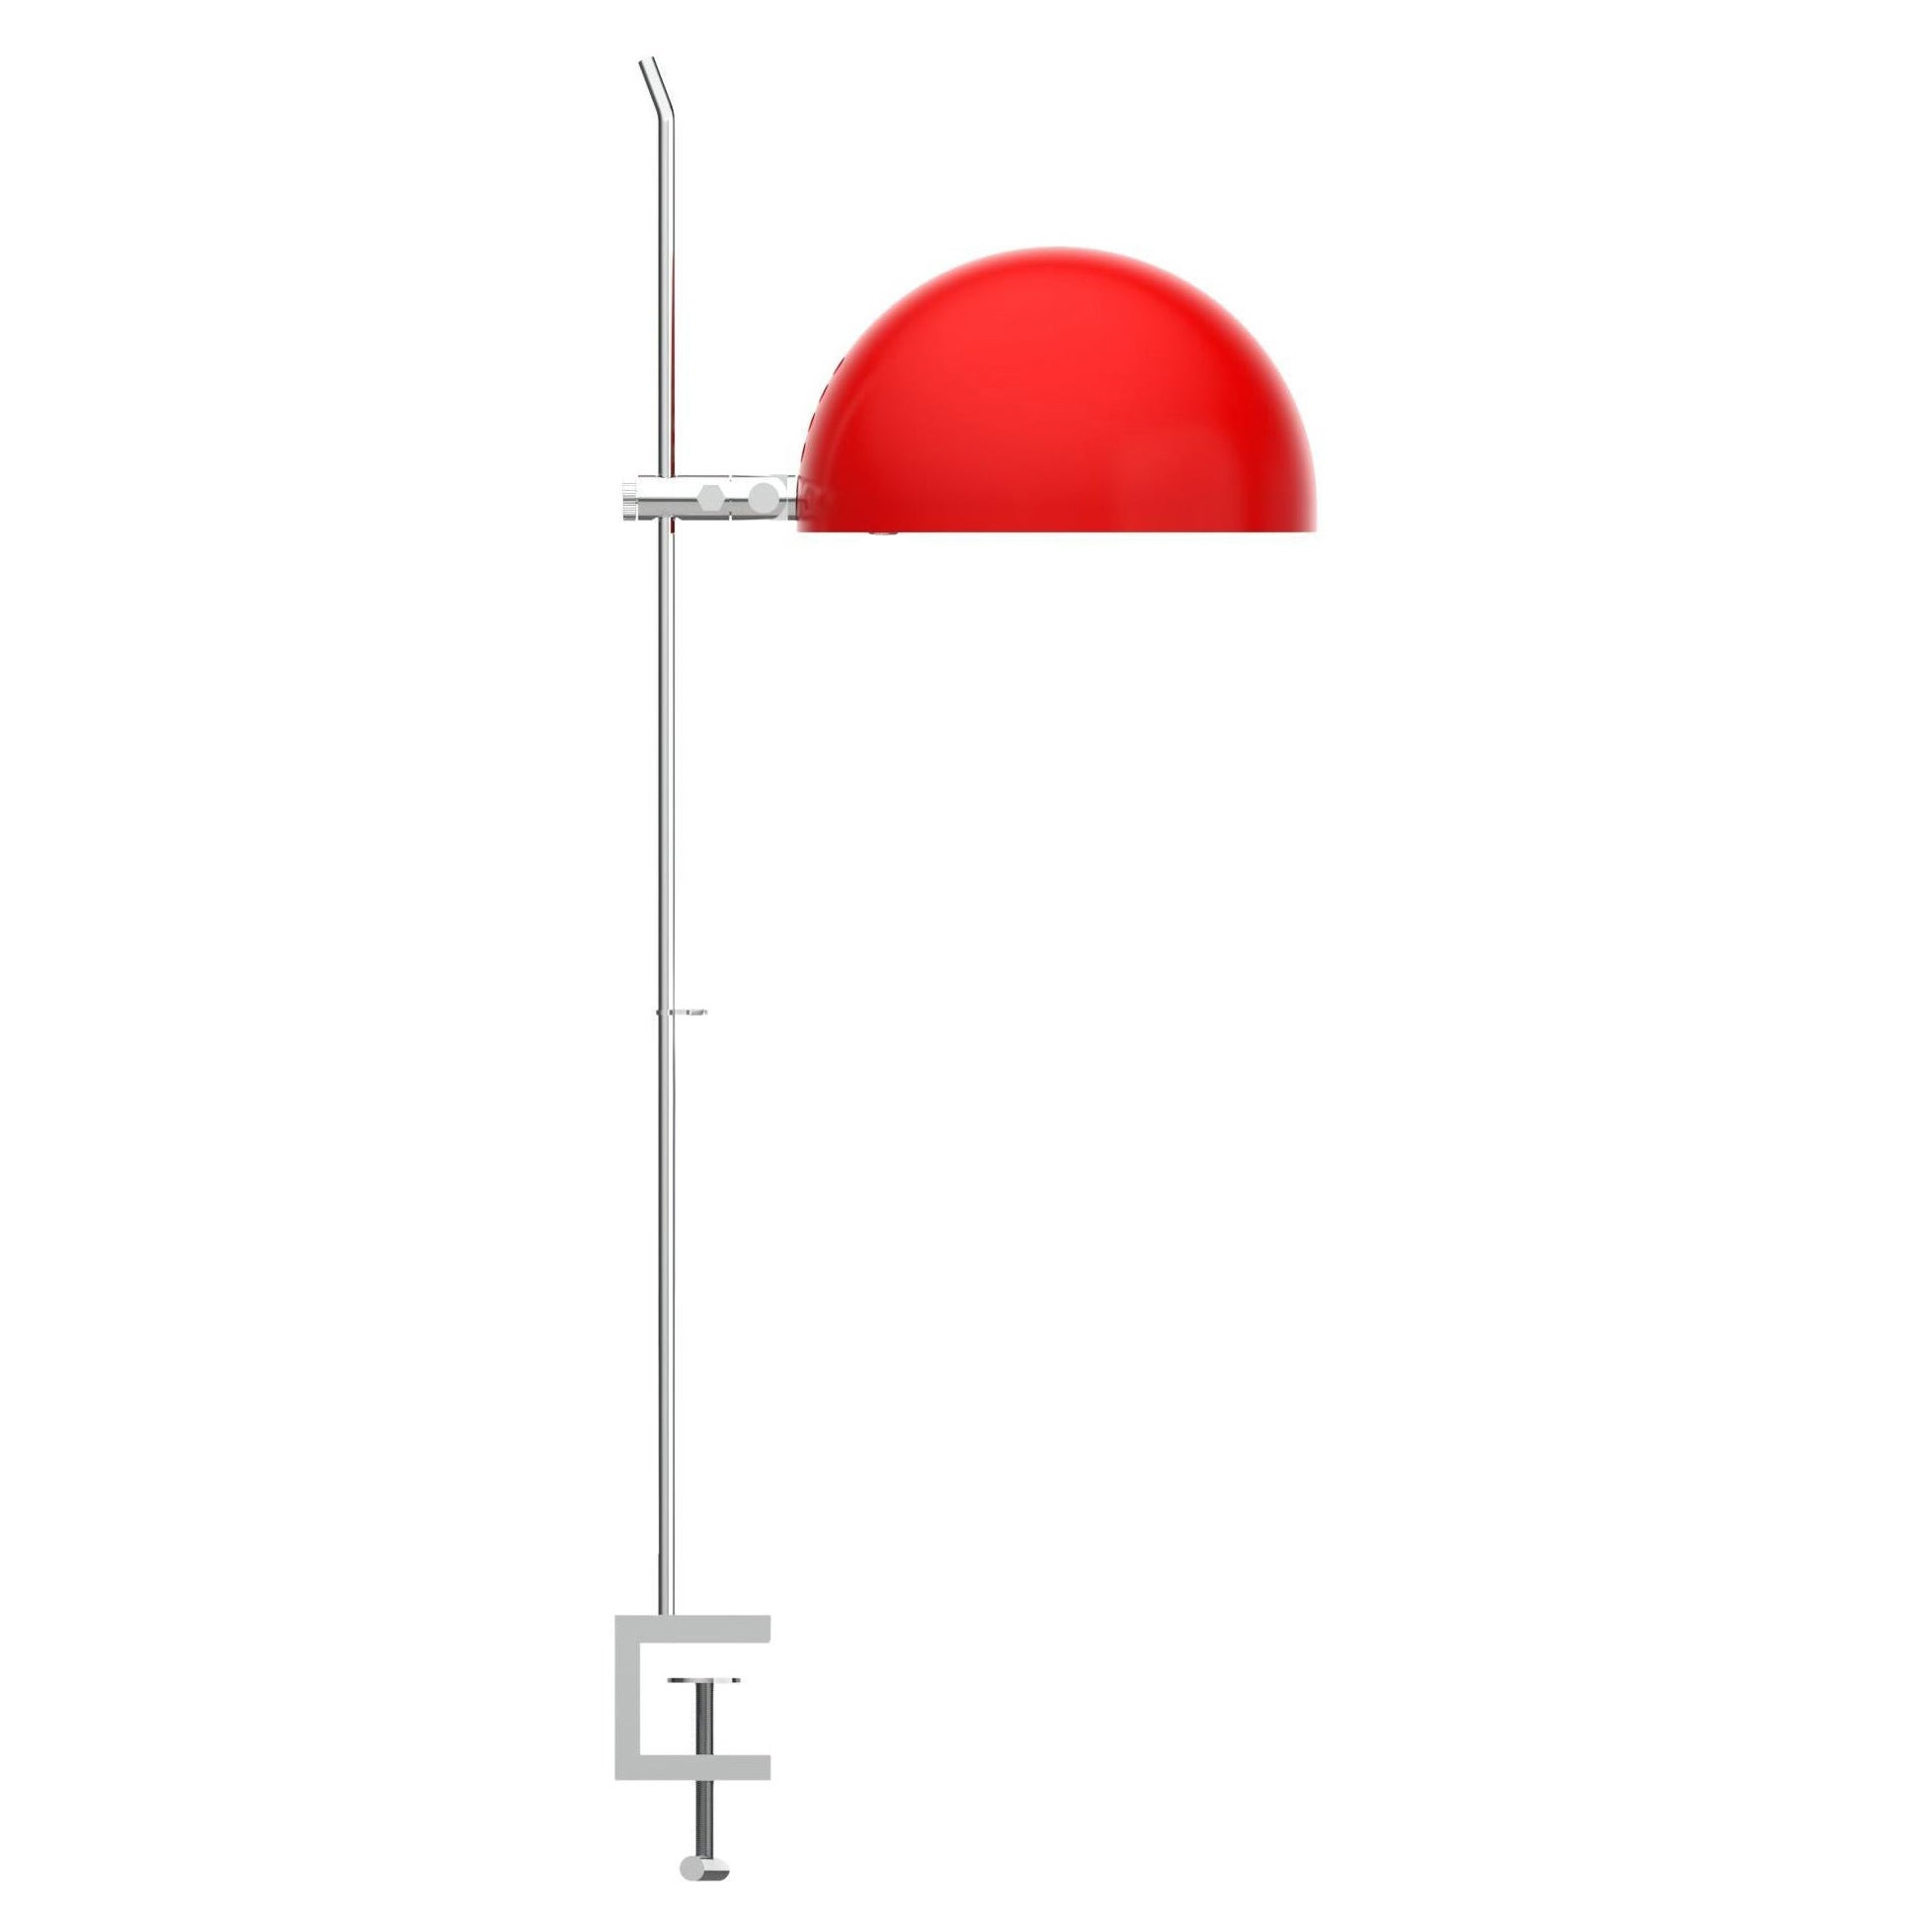 Alain Richard 'A22F' lampe à pampilles en rouge pour Disderot